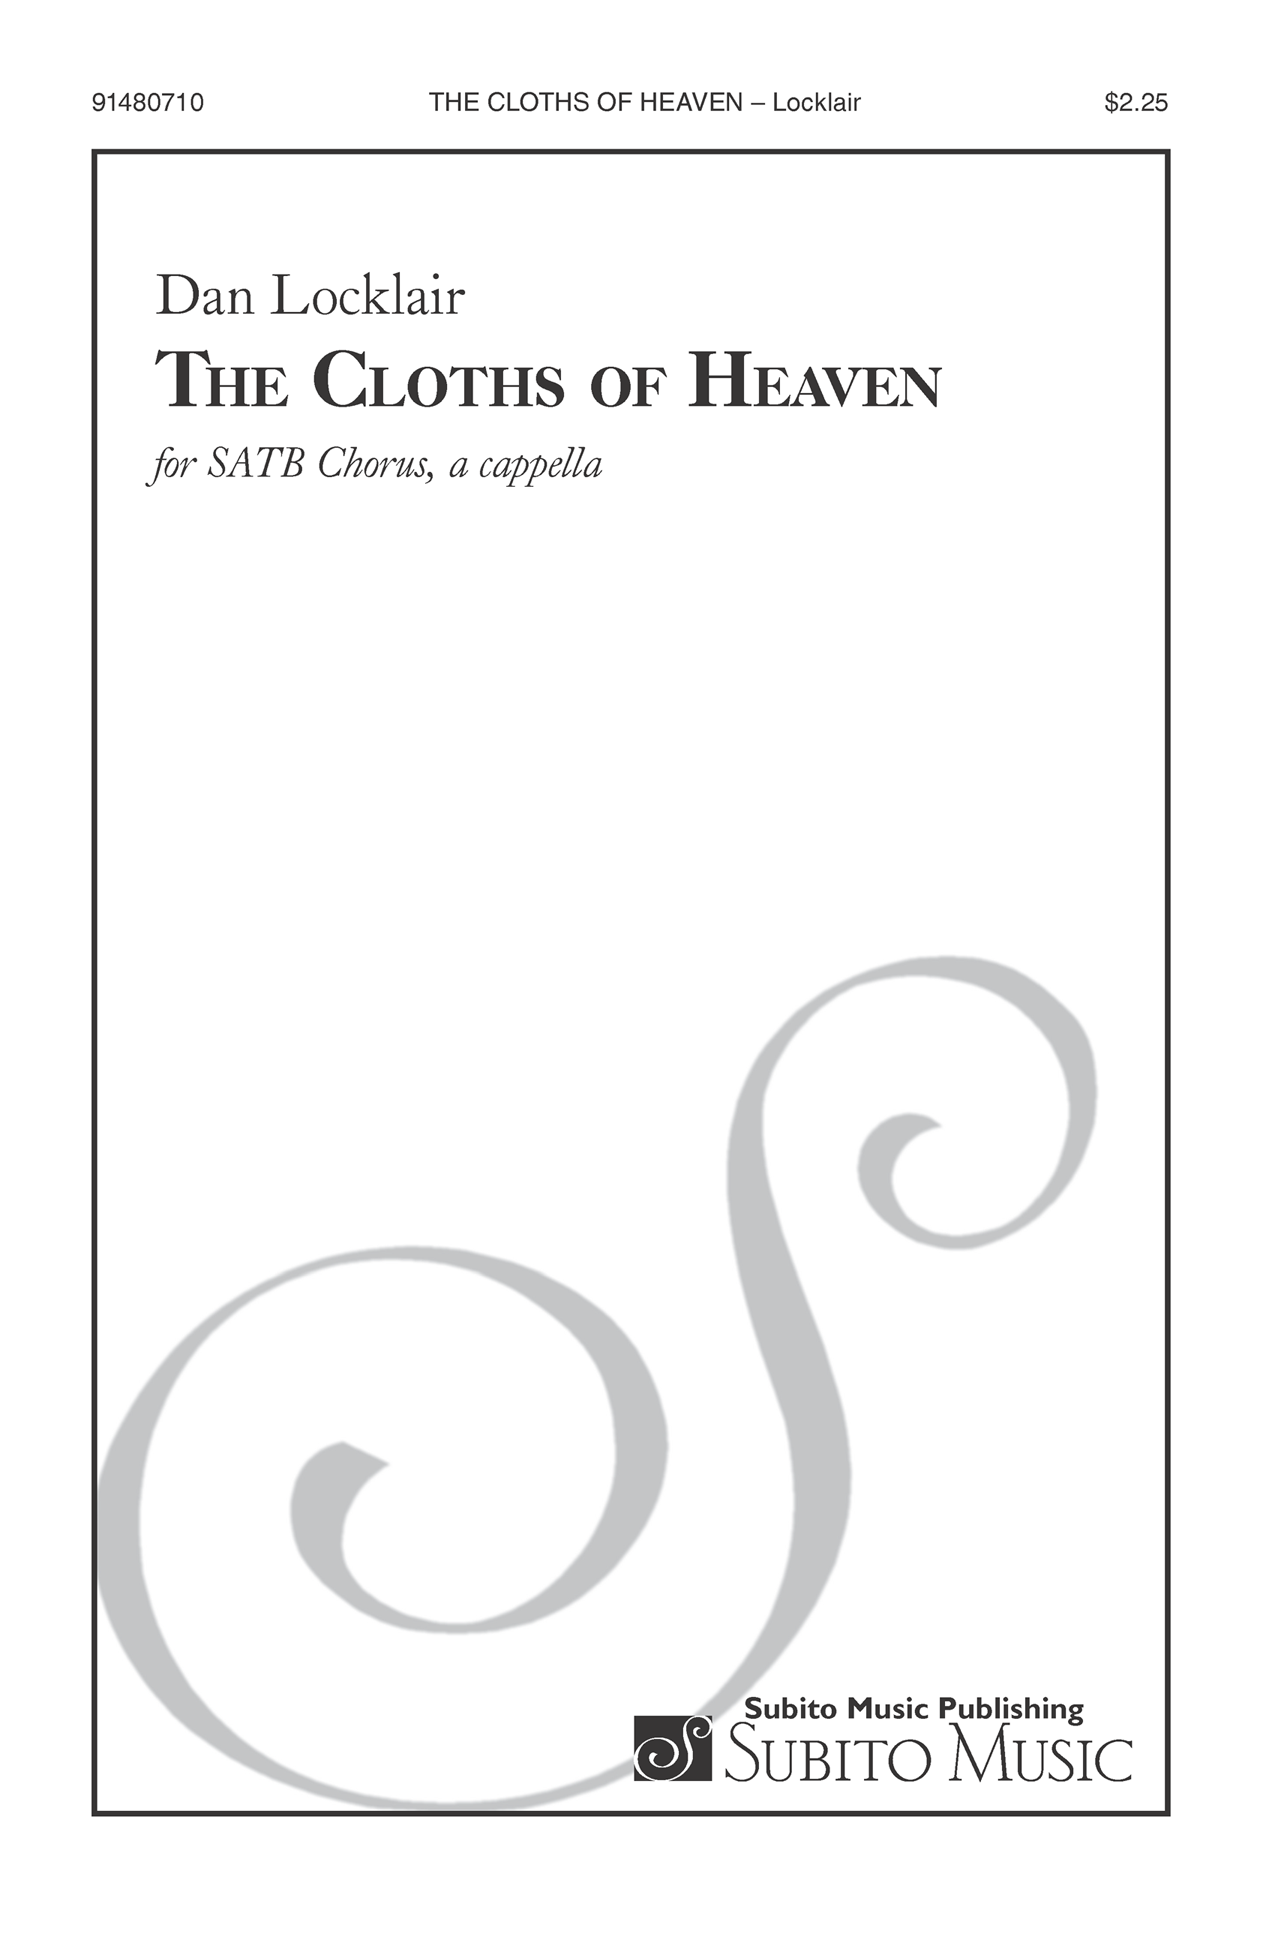 The Cloths of Heaven for SATB Chorus, a cappella